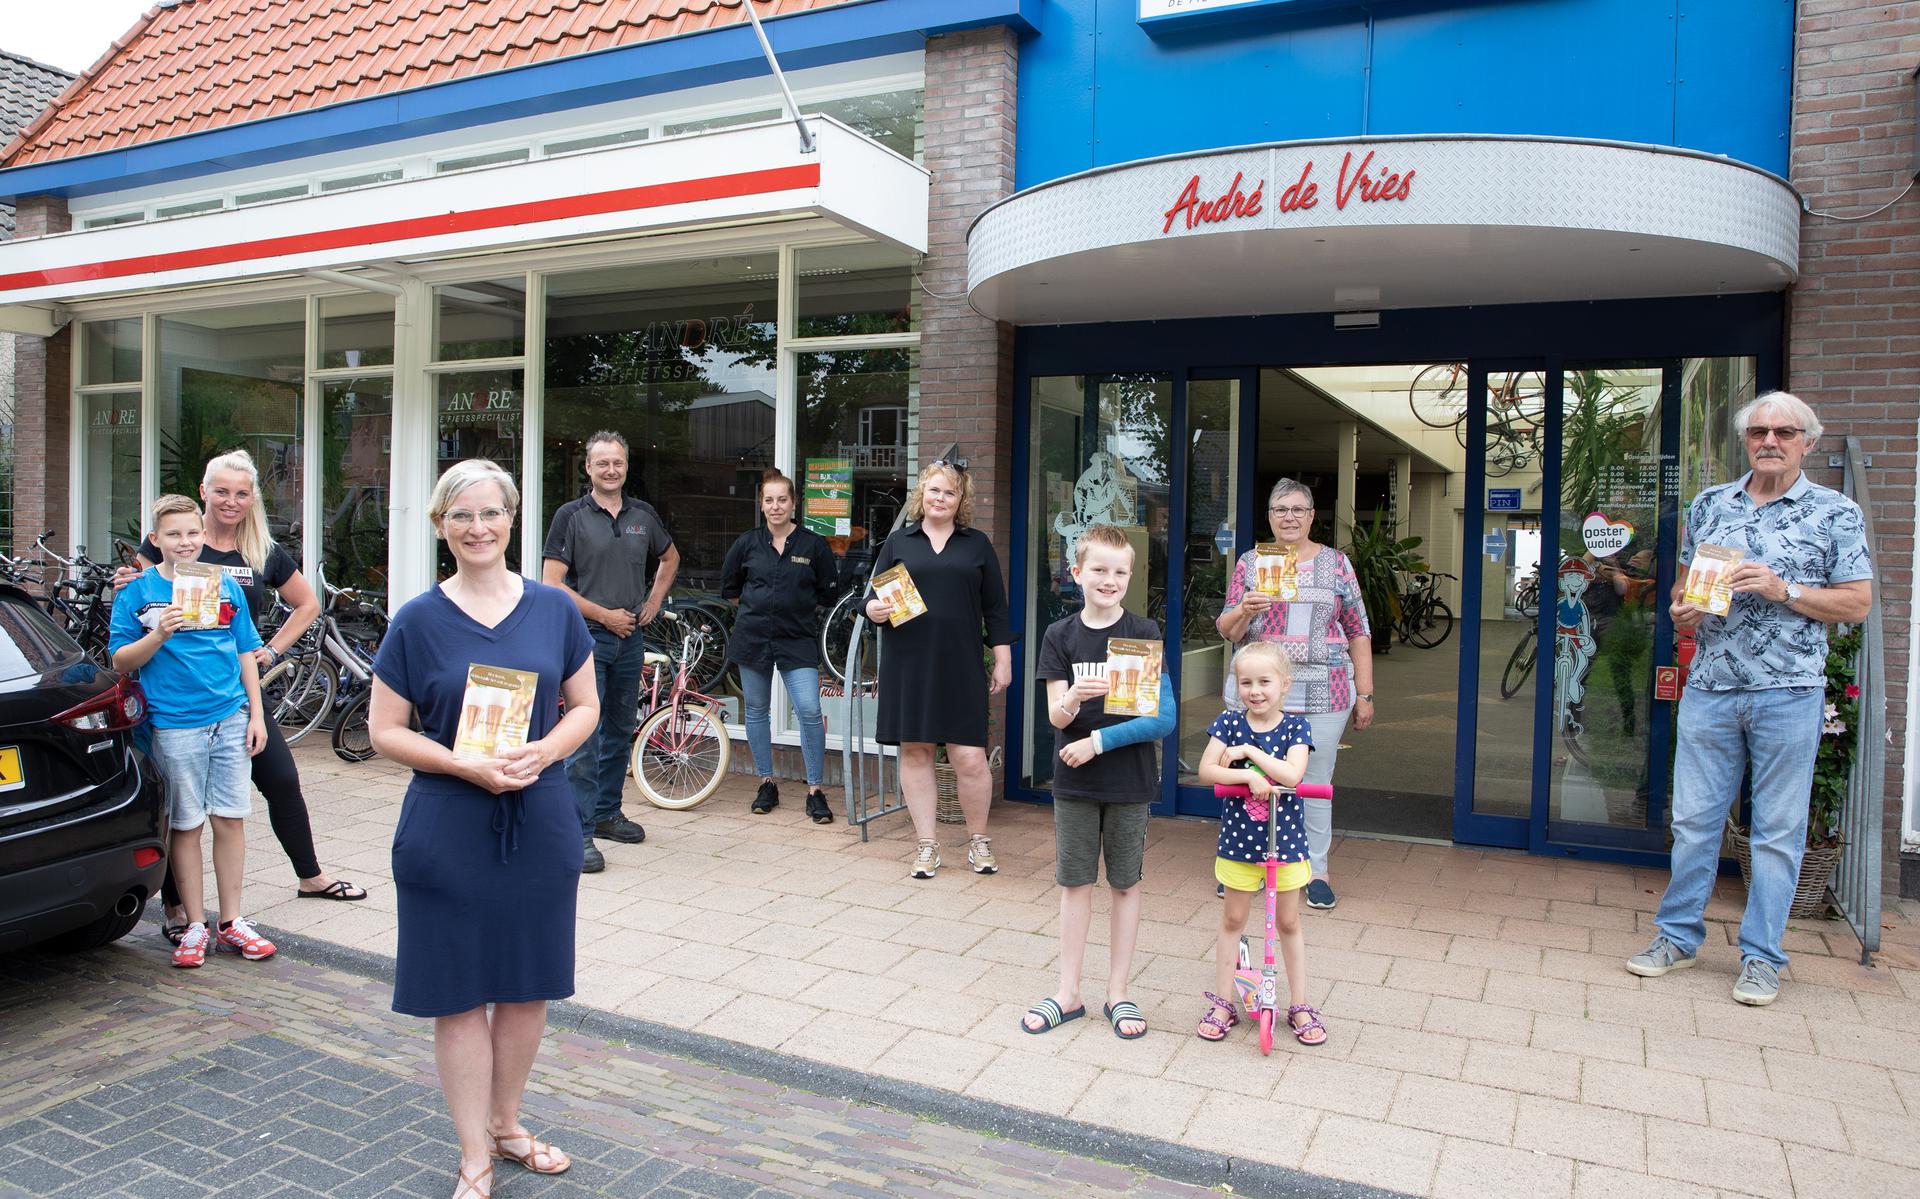 De winnaars van de Vaderdag-actie van de Koplopers hebben uit handen van André de Vries de horecacheque ontvangen. Henk van der Heide en Sanne Roeters ontbreken op de foto.